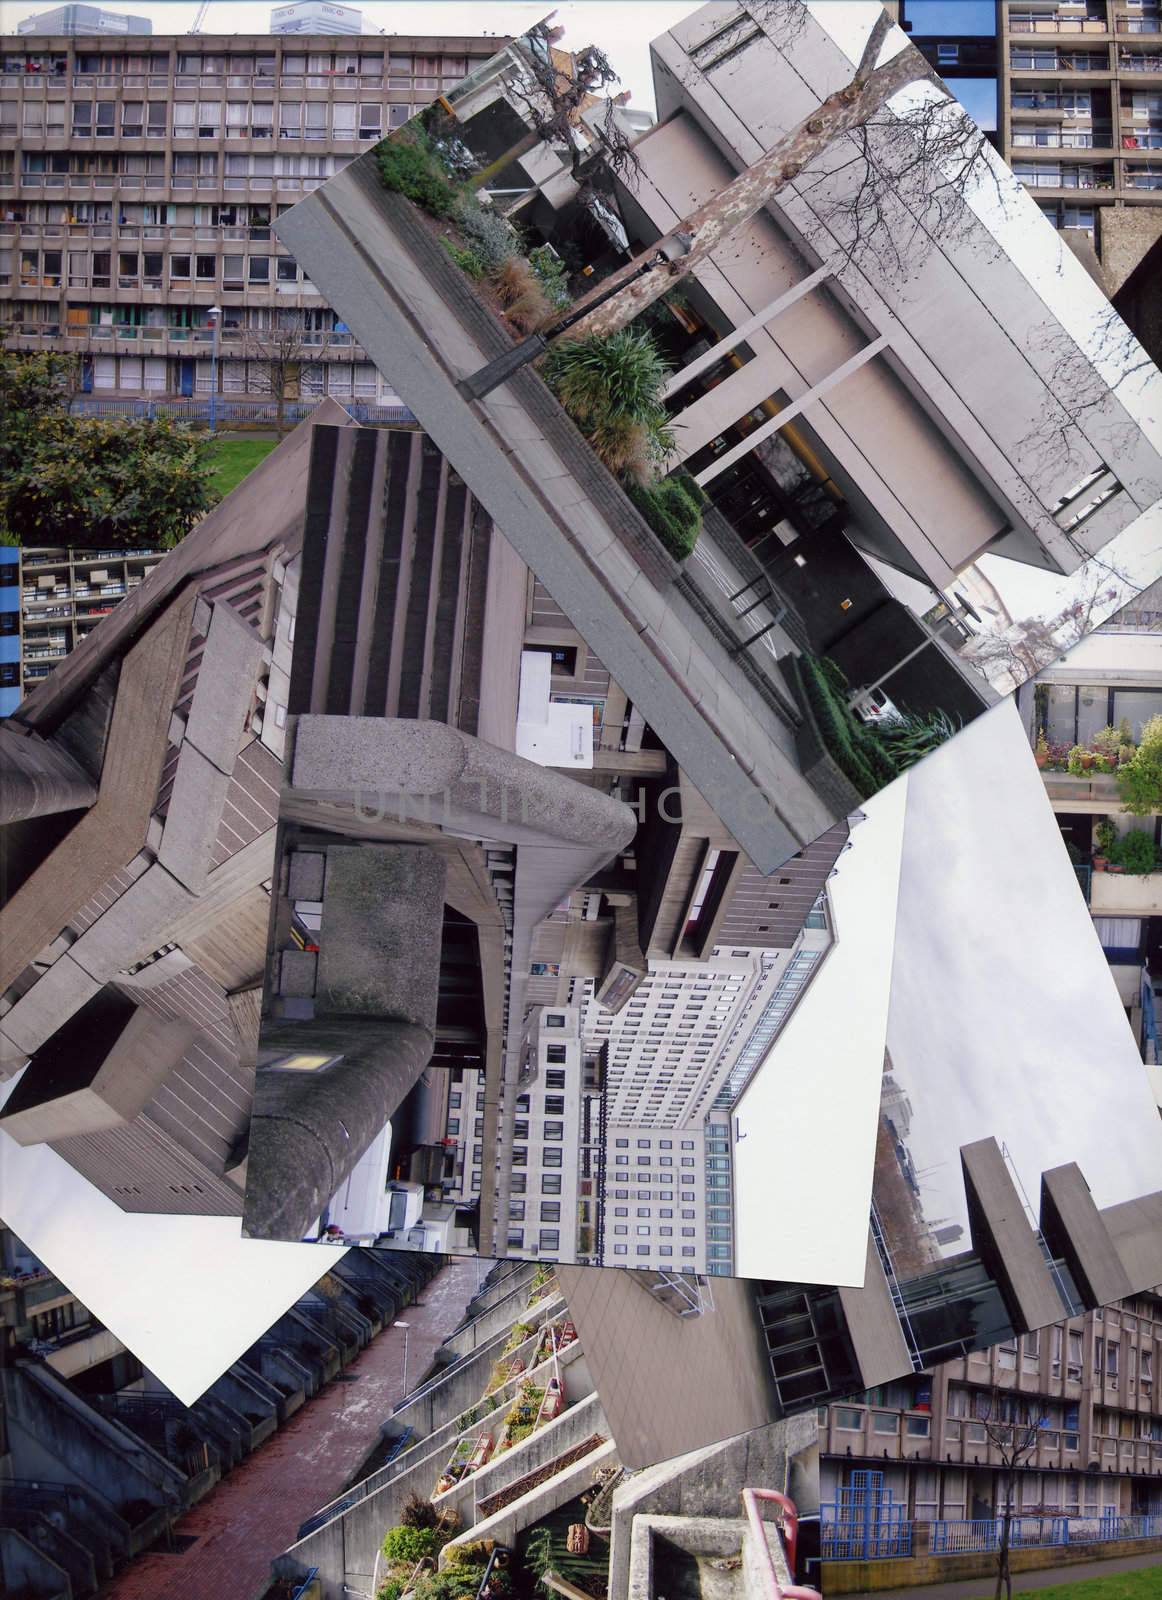 London architecture photo collage by claudiodivizia